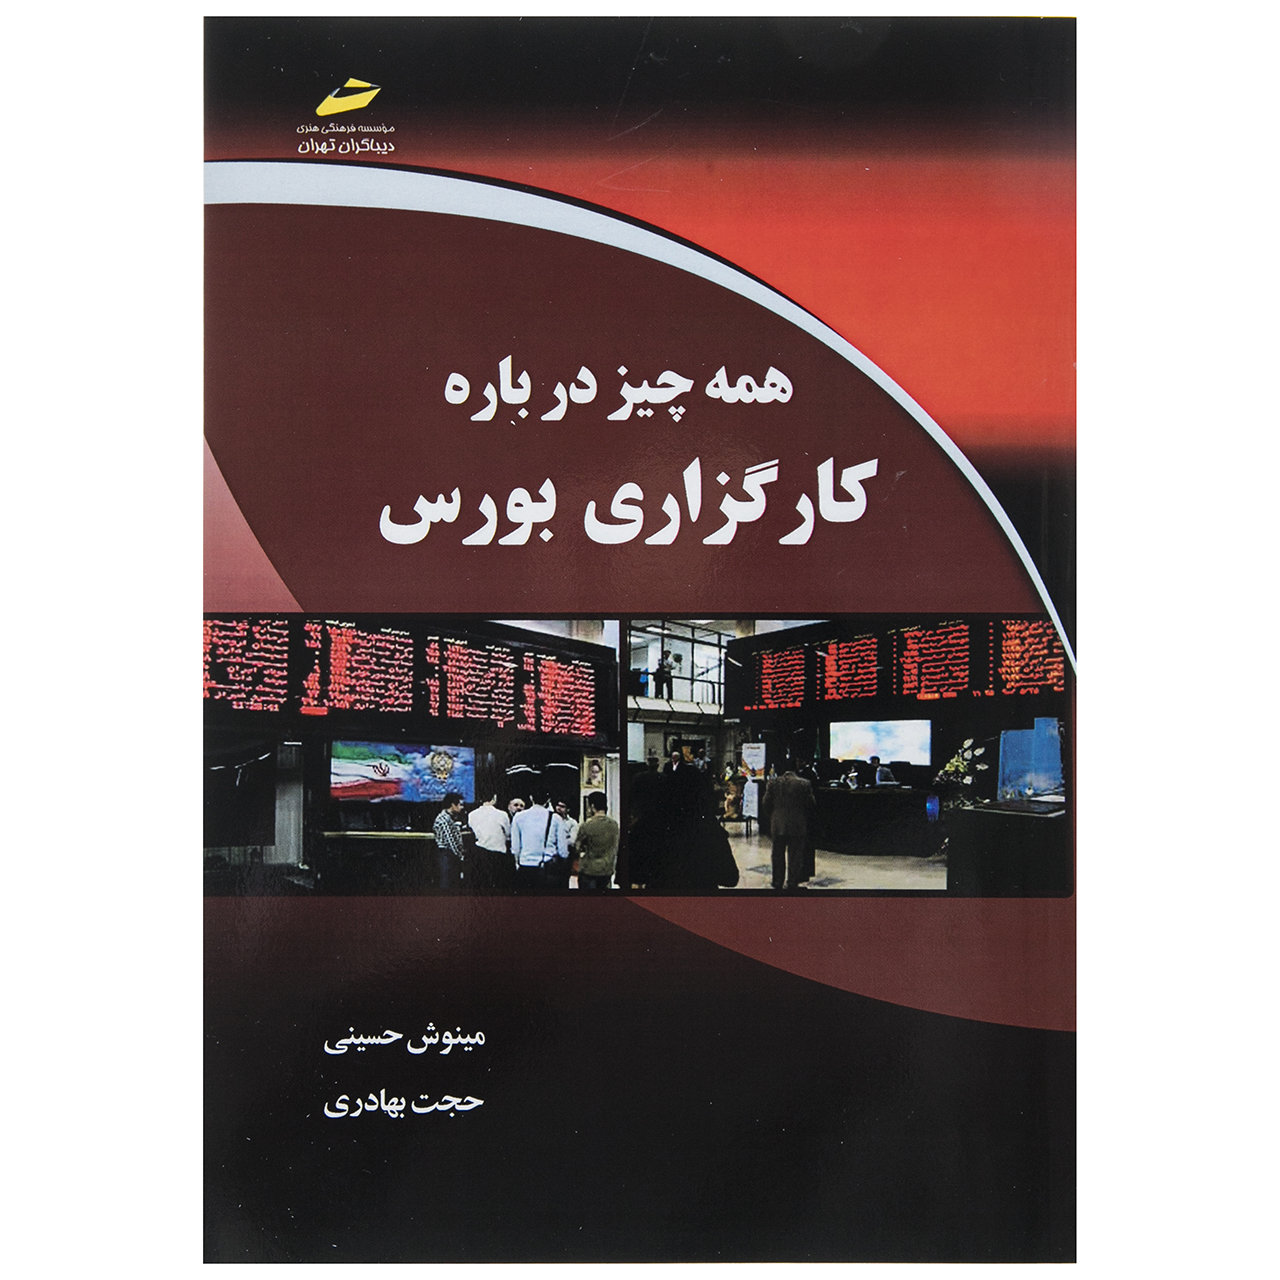 کتاب همه چیز درباره کارگزاری بورس اثر مینوش حسینی نشر دیباگران تهران